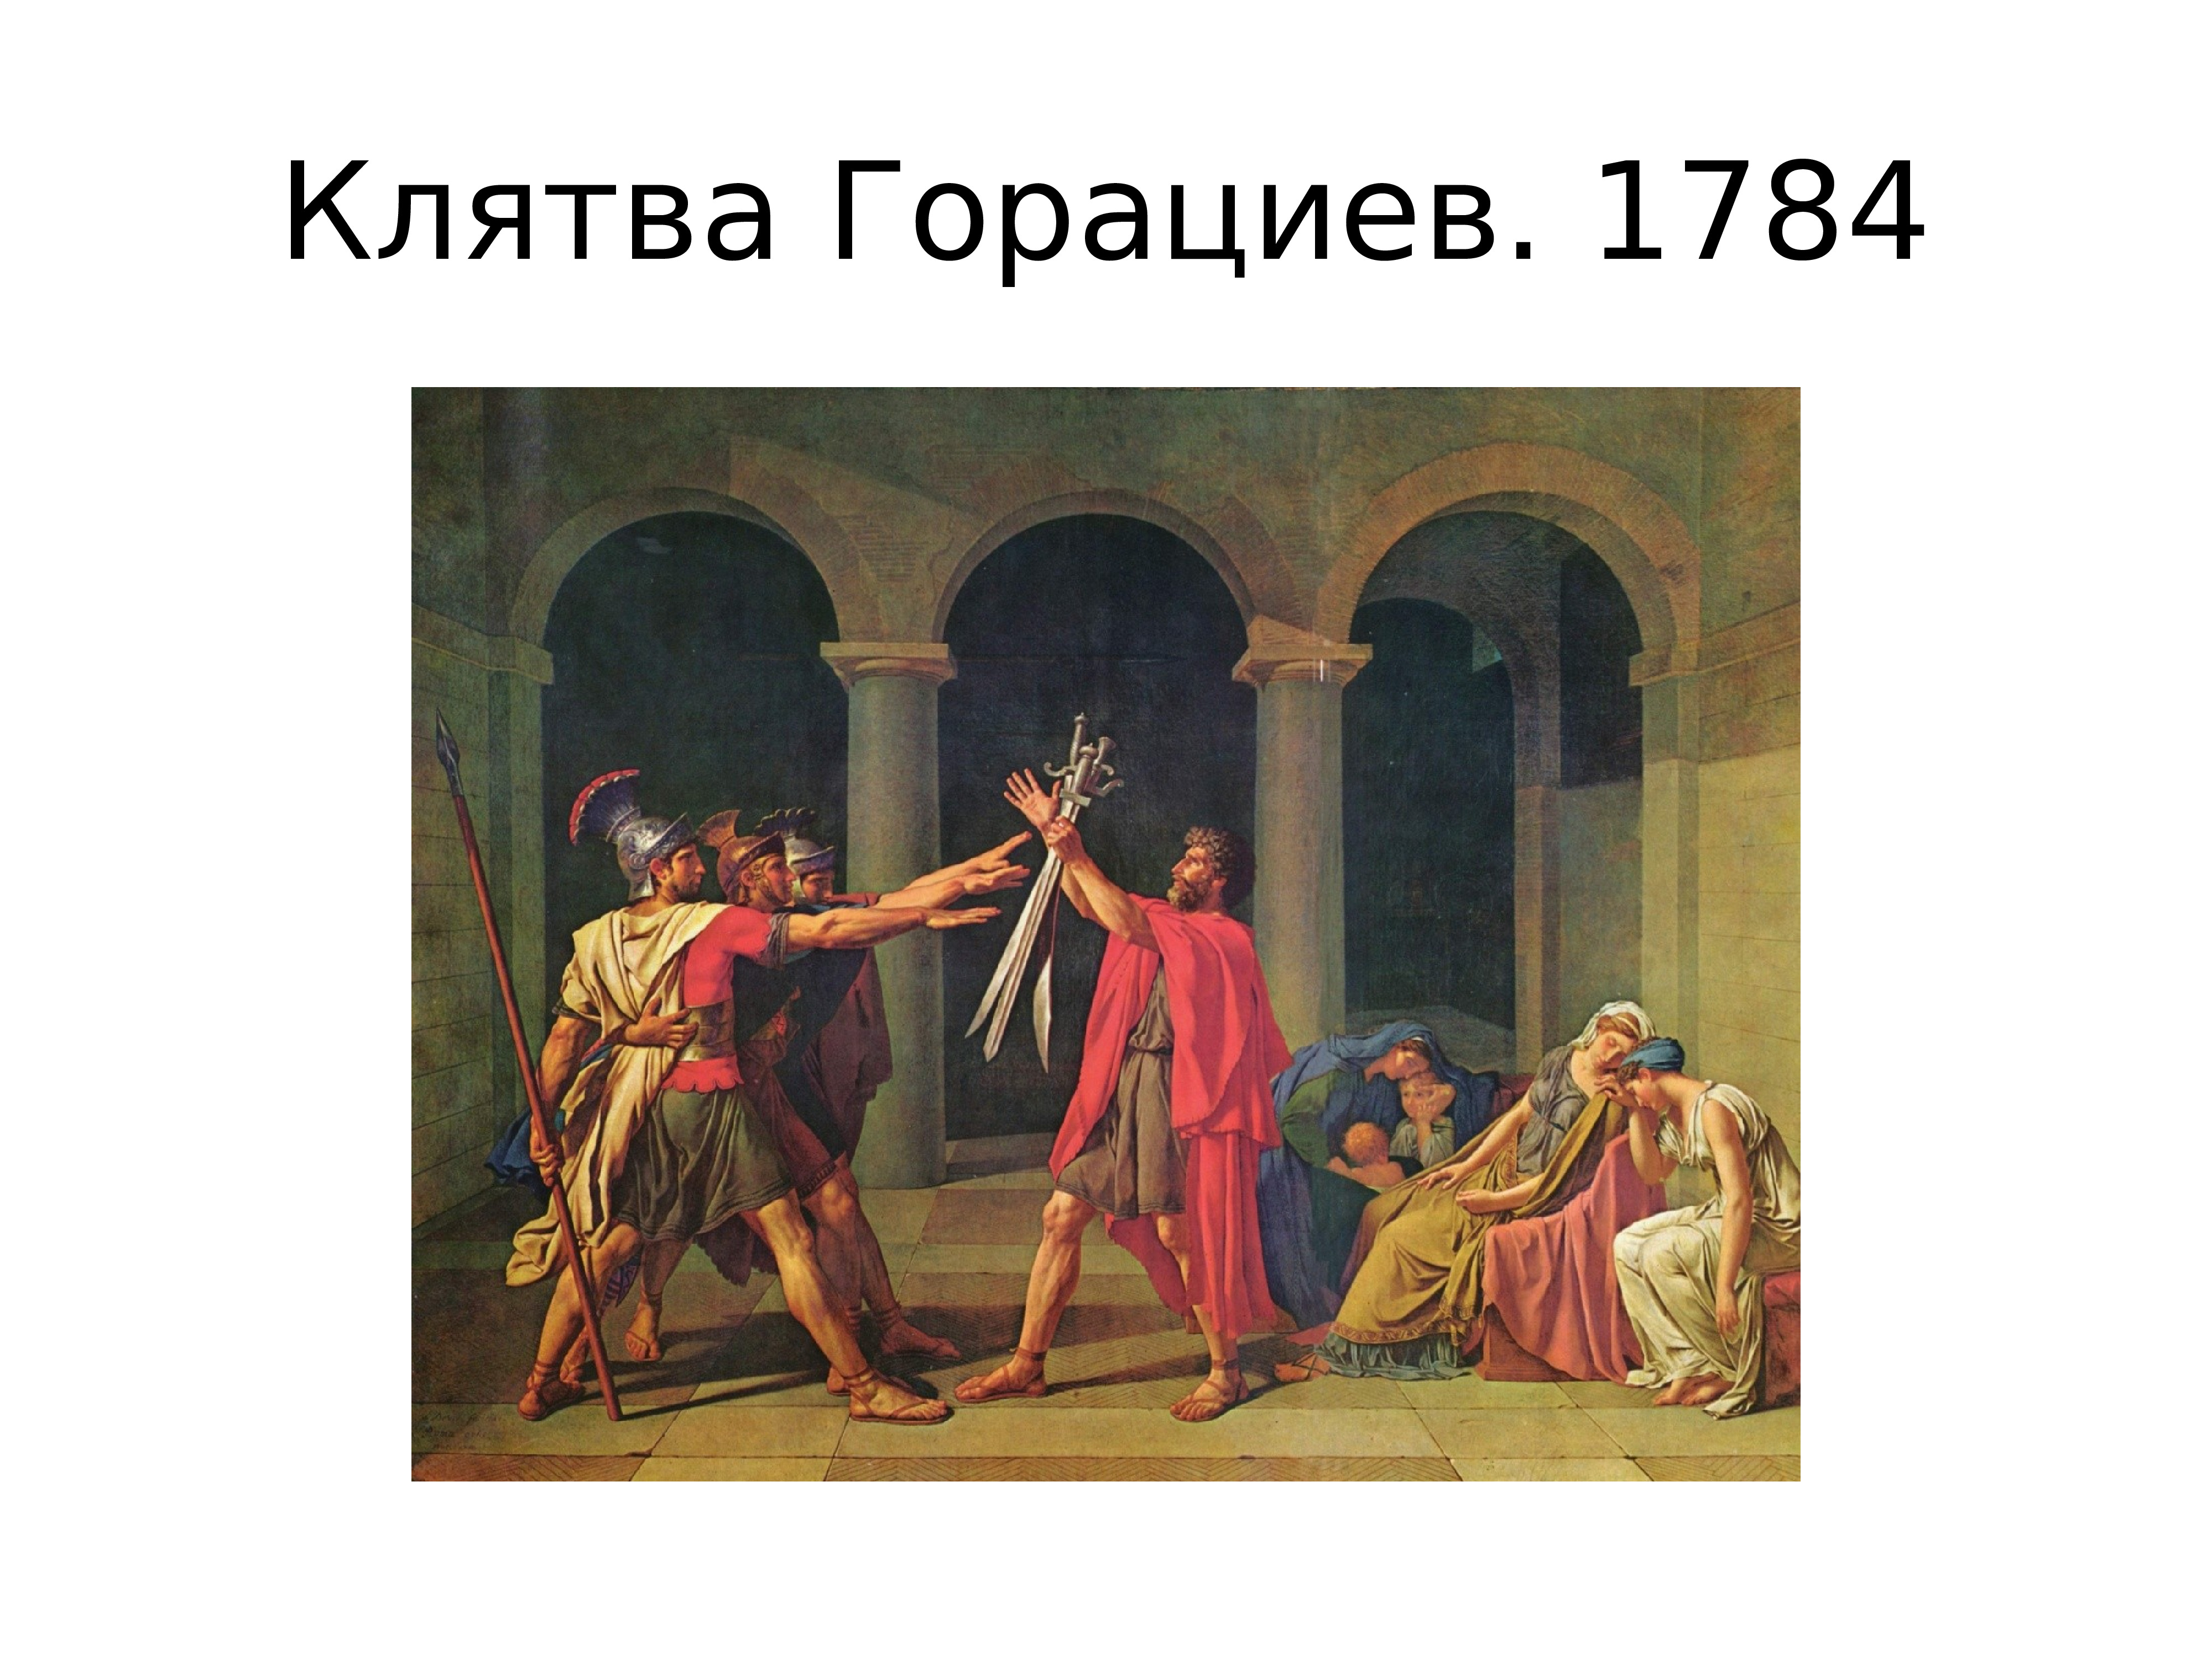 Литературный классицизм. 1784 – «Клятва горациев».